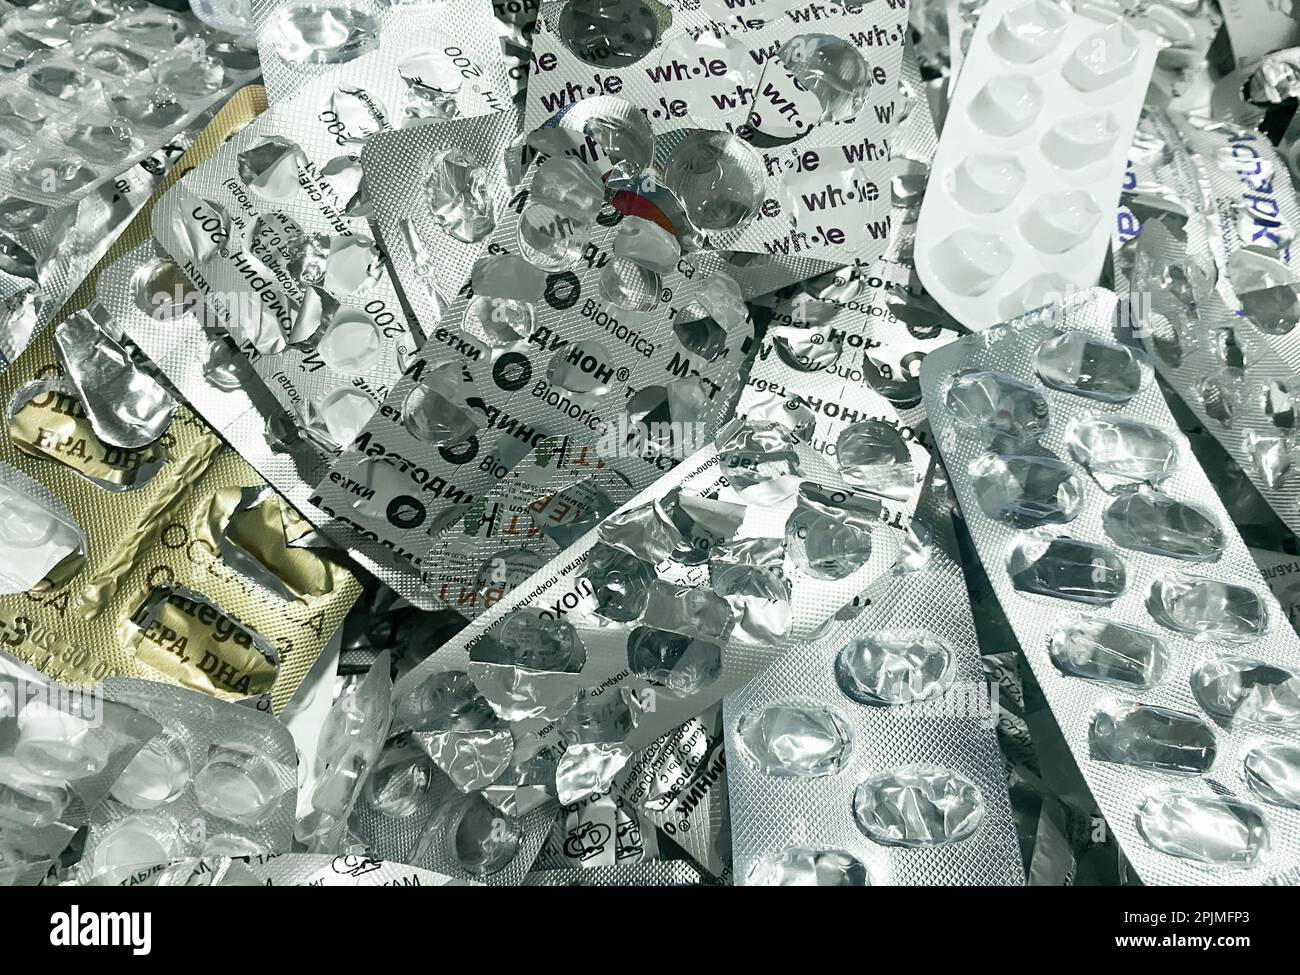 Moscou, Russie, novembre 2022: Beaucoup de cloques vides de pilules utilisées. Le concept de tri séparé des ordures, de protection de l'environnement. Banque D'Images